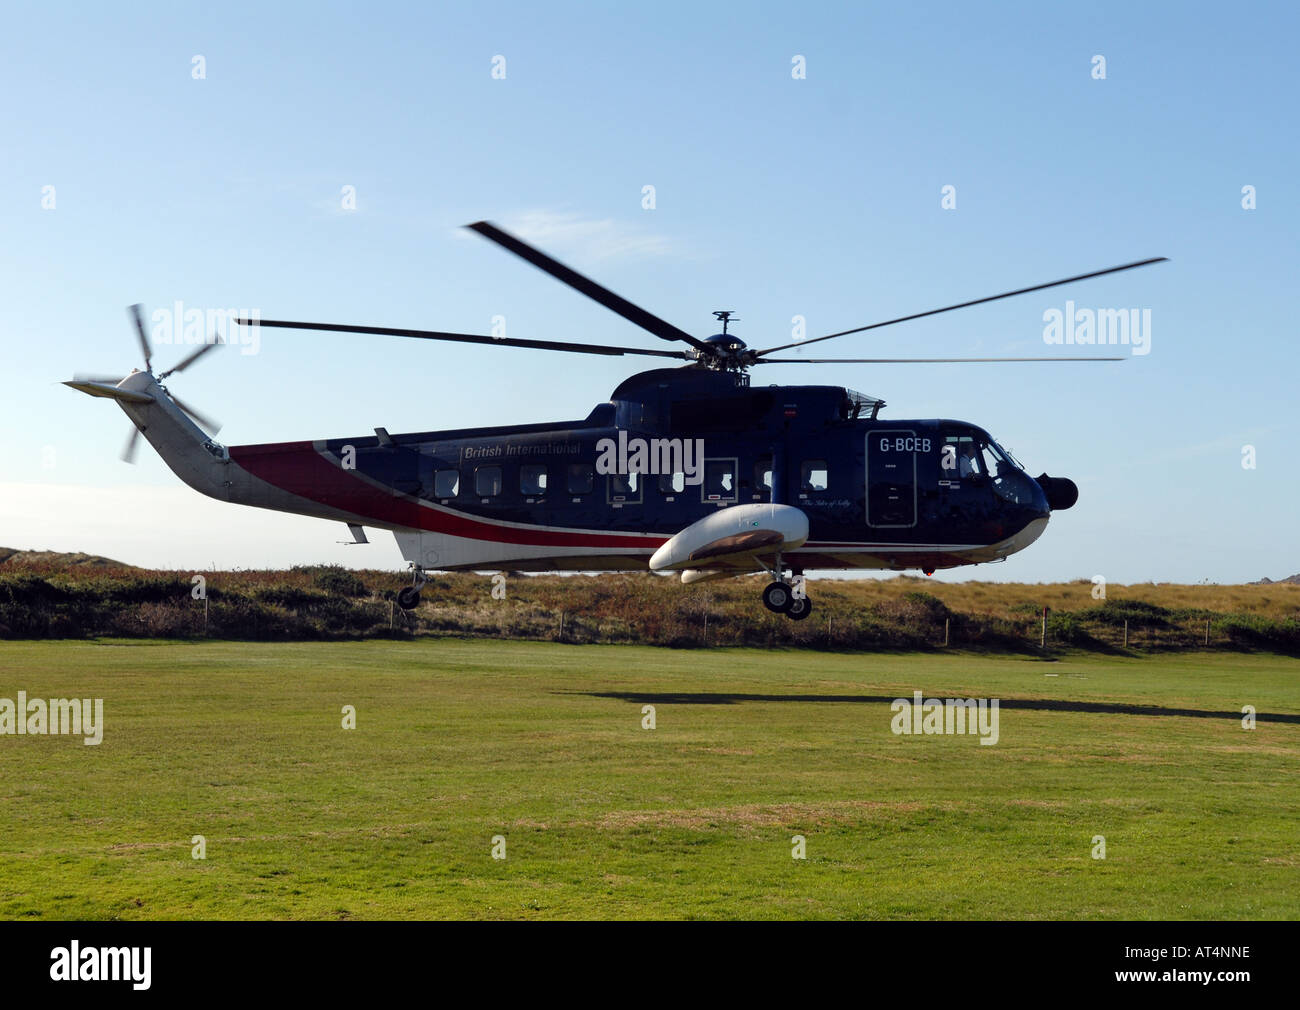 British il trasporto internazionale di passeggeri in elicottero Tresco, Sclliy Isles, UK. Foto Stock